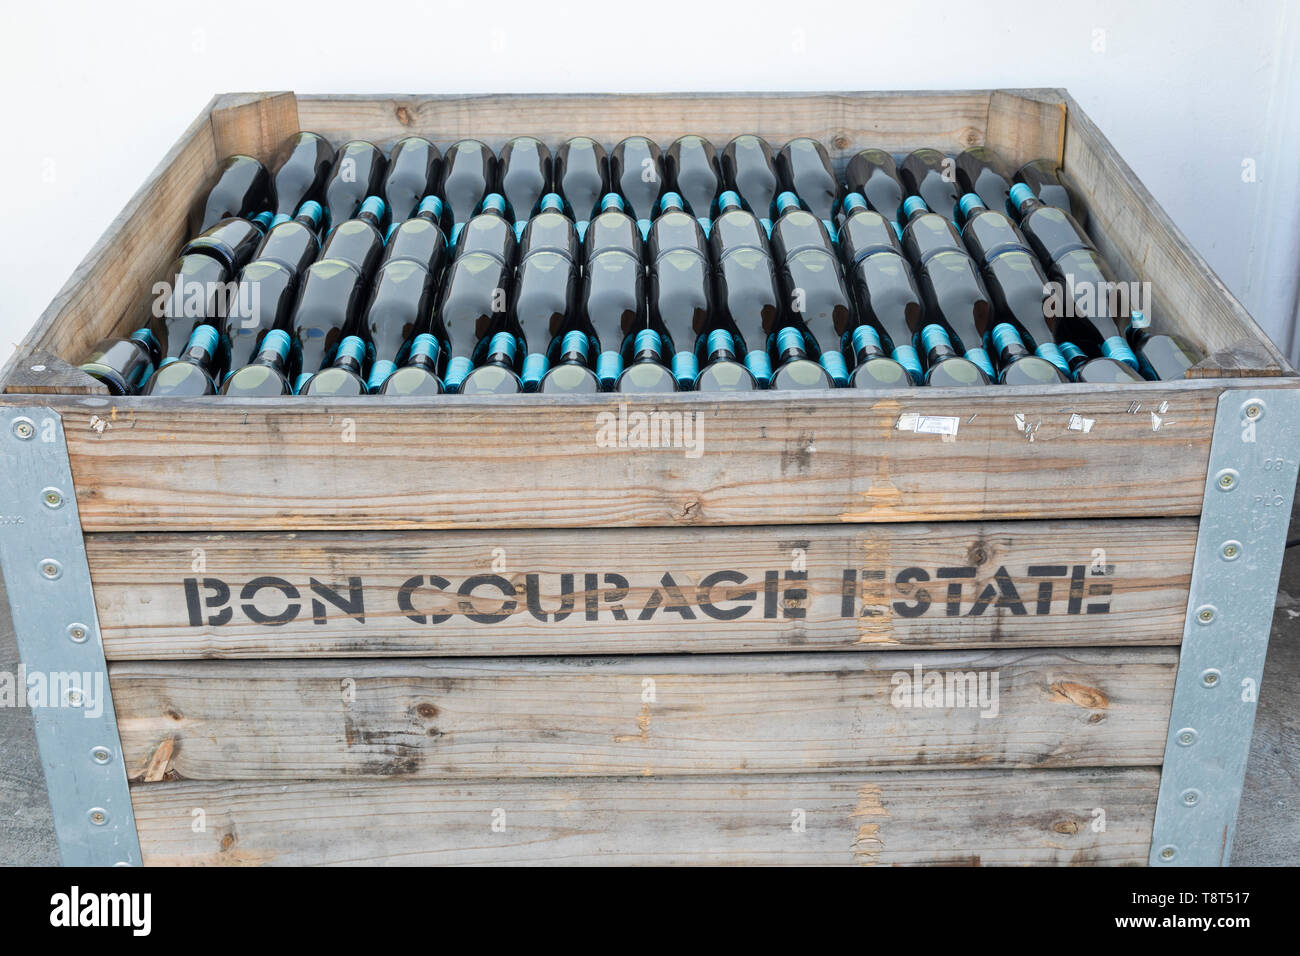 Caisse de vin rouge en bouteille récemment dans des bouteilles non étiquetées à Bon courage Wine Estate Cellars, Robertson Wine Valley, Western Cape Winelands, Afrique du Sud Banque D'Images